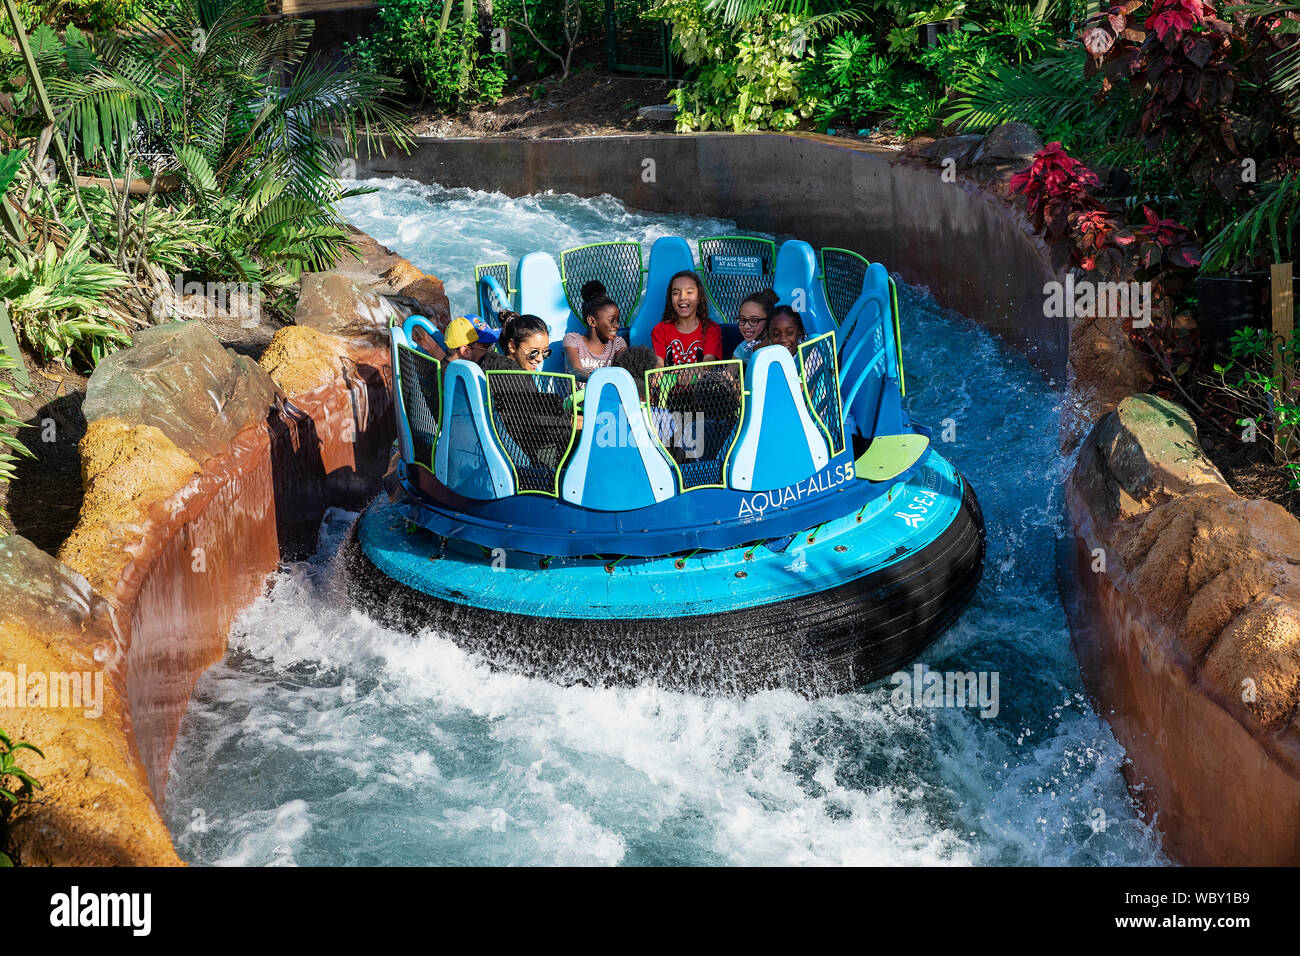 AquaFalls acqua ride al Seaworld di Orlando, Florida, Stati Uniti d'America. Foto Stock